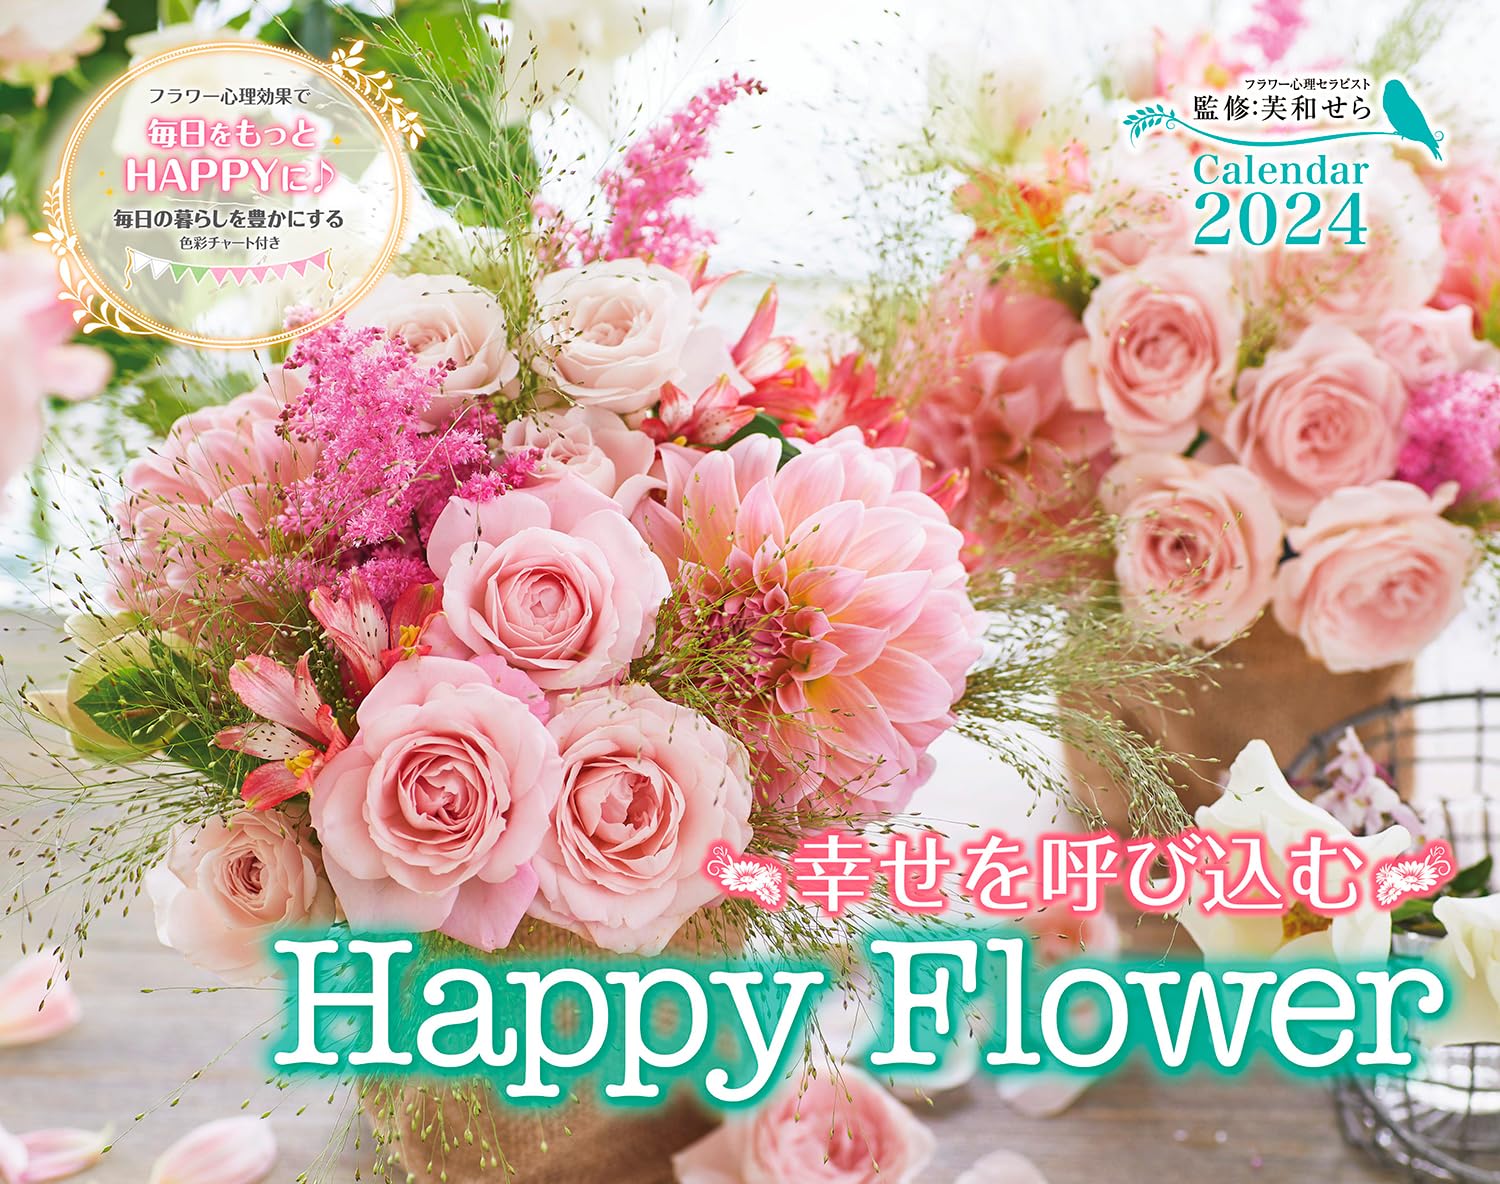 幸せを呼び?む Happy Flower Calendar 2024